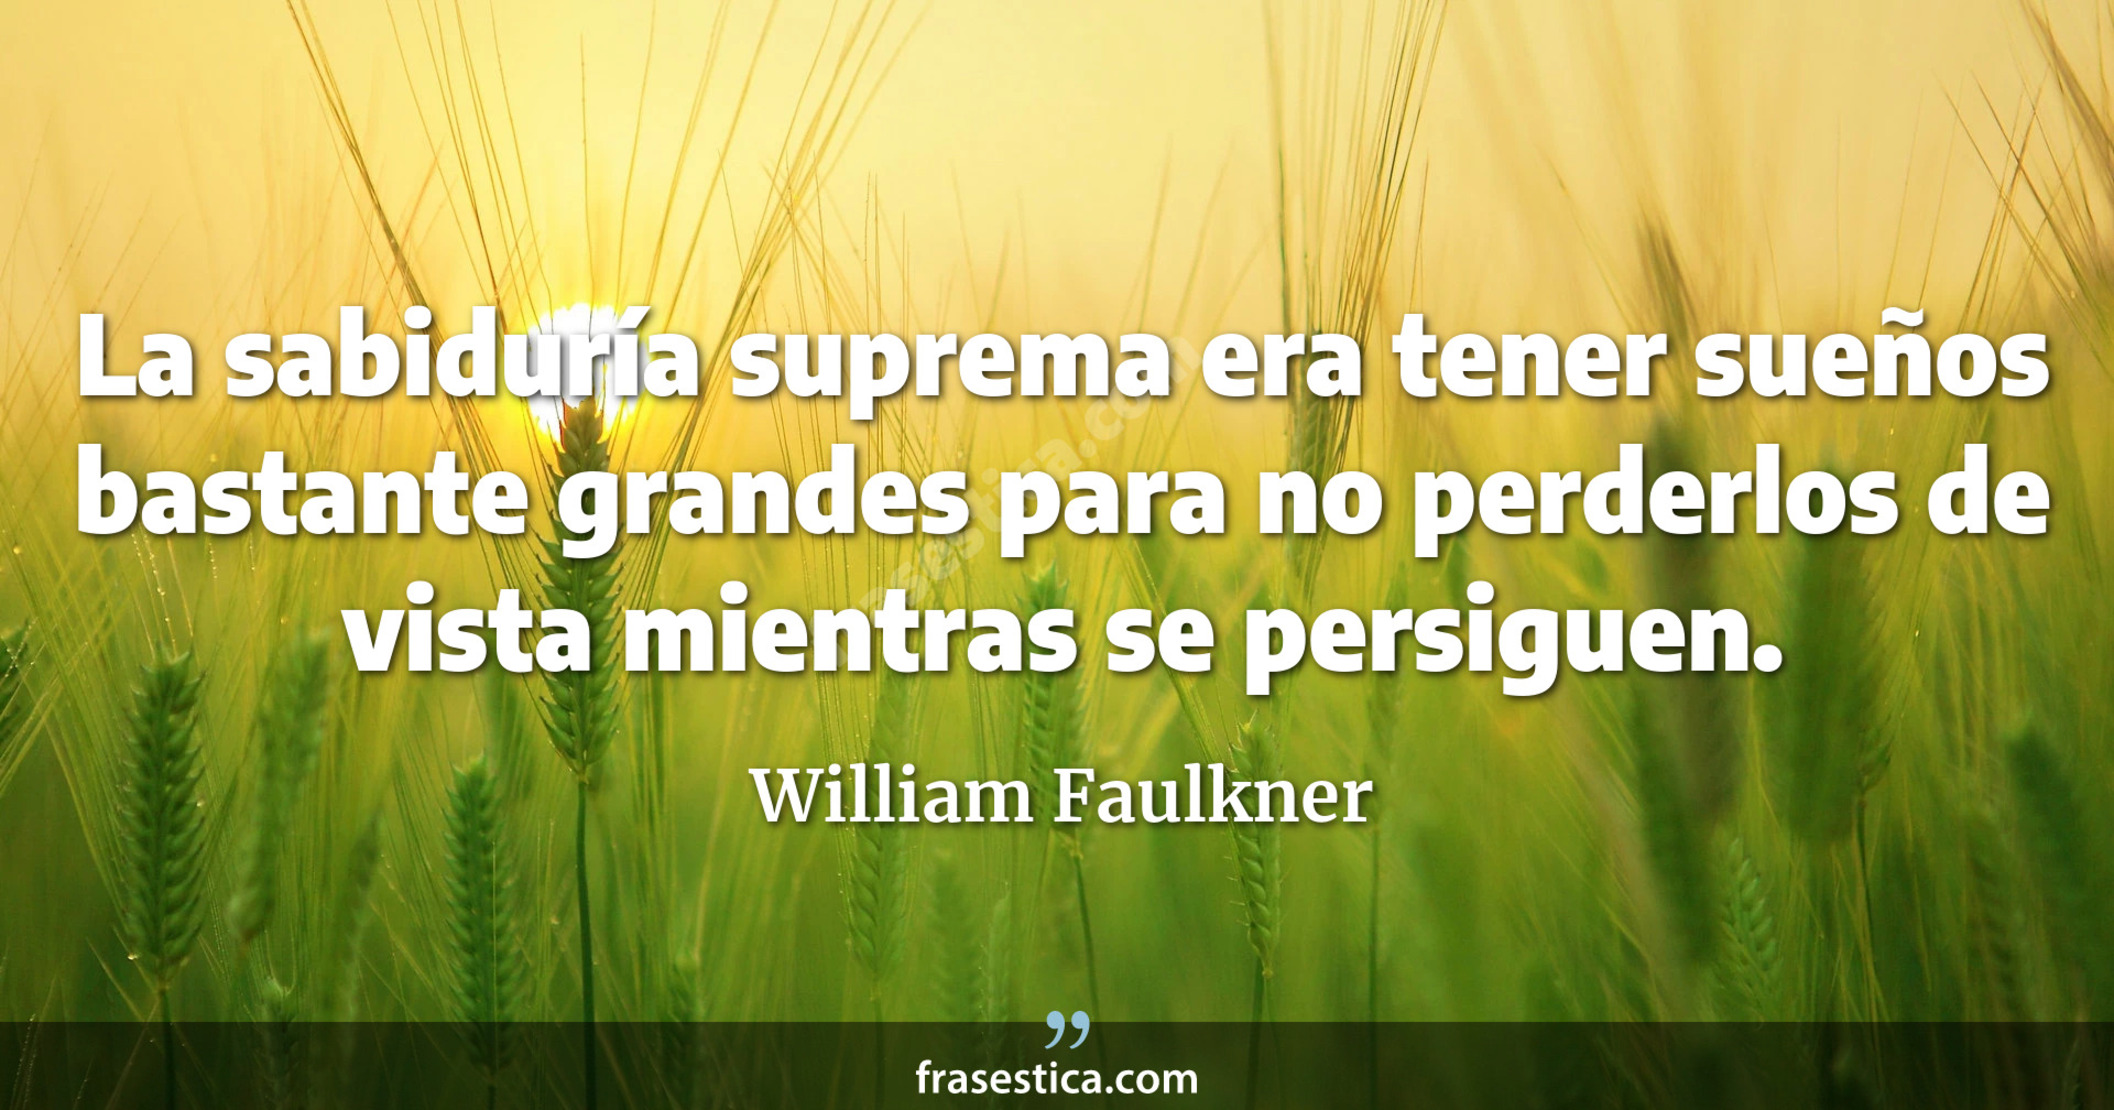 La sabiduría suprema era tener sueños bastante grandes para no perderlos de vista mientras se persiguen. - William Faulkner